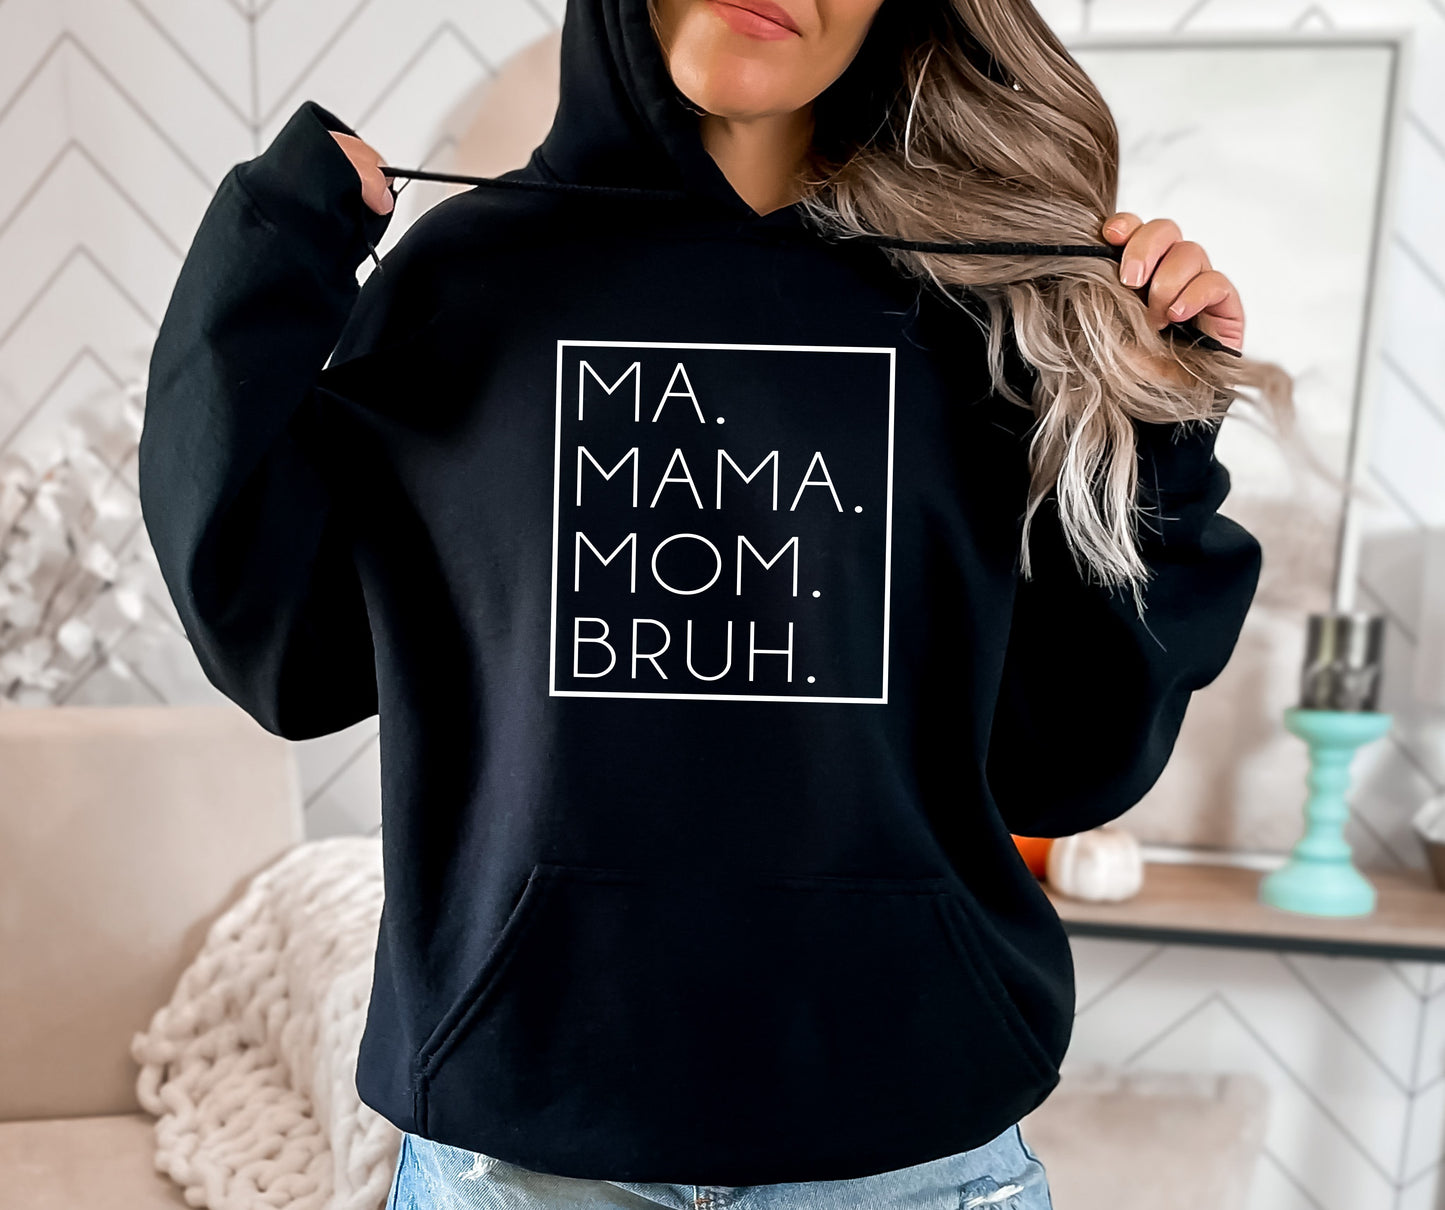 Ma. Mama. Mom.